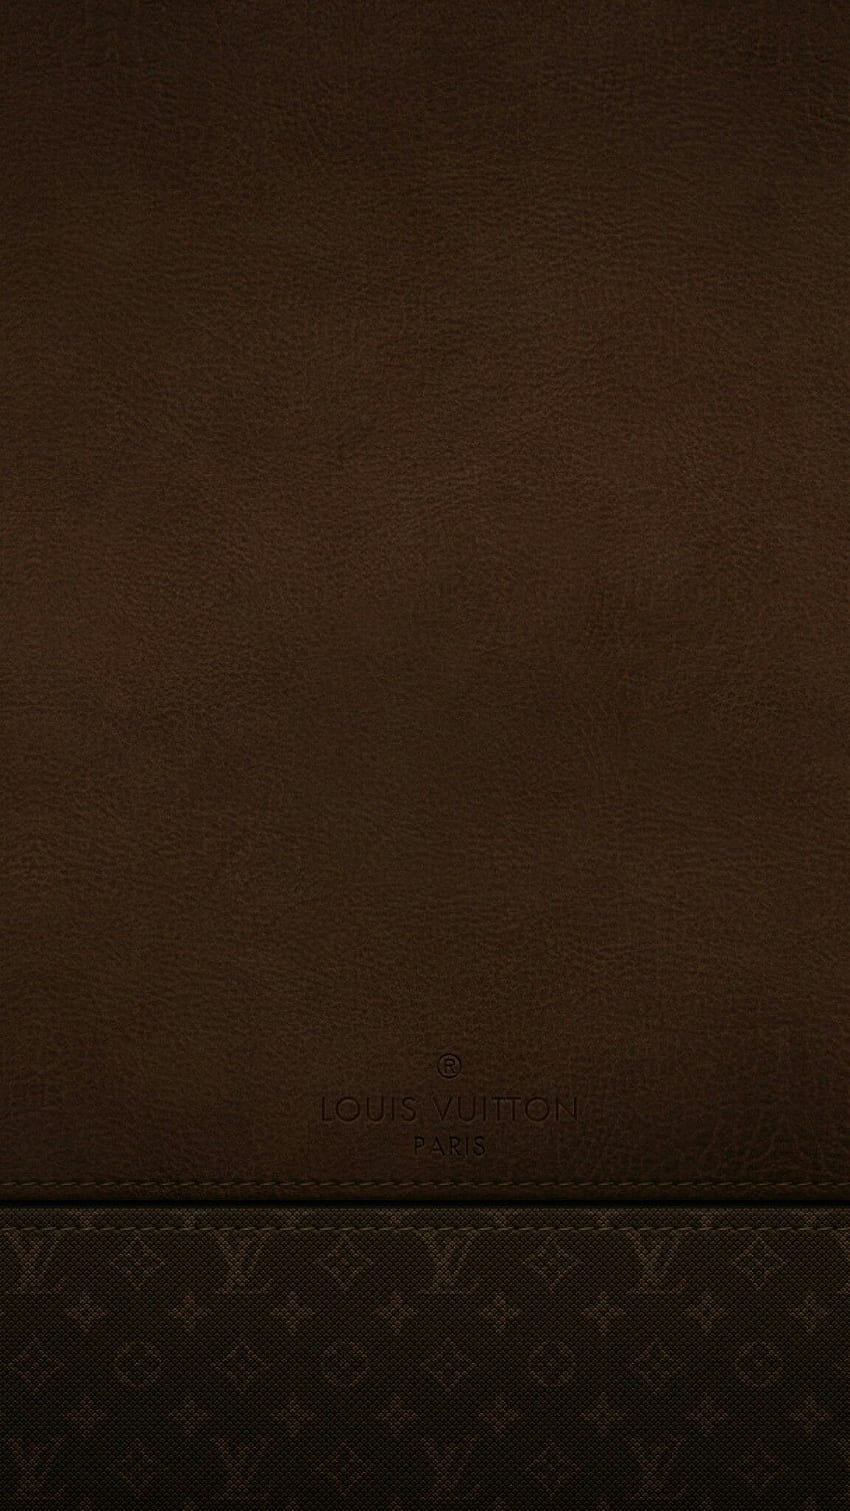 Rococó Tooled Leather là một kiểu dáng da độc đáo, tinh tế và sang trọng. Bạn là tín đồ của phong cách cổ điển và muốn tìm kiếm sự hoàn hảo chi tiết? Hãy xem hình ảnh liên quan đến từ khóa này để thưởng thức những kiệt tác thủ công đẹp nhất! Translation: Rococó Tooled Leather is a unique, sophisticated and luxurious leather style. Are you a follower of classical style and want to seek perfection in details? Let\'s take a look at the related images to enjoy the most beautiful handmade masterpieces!